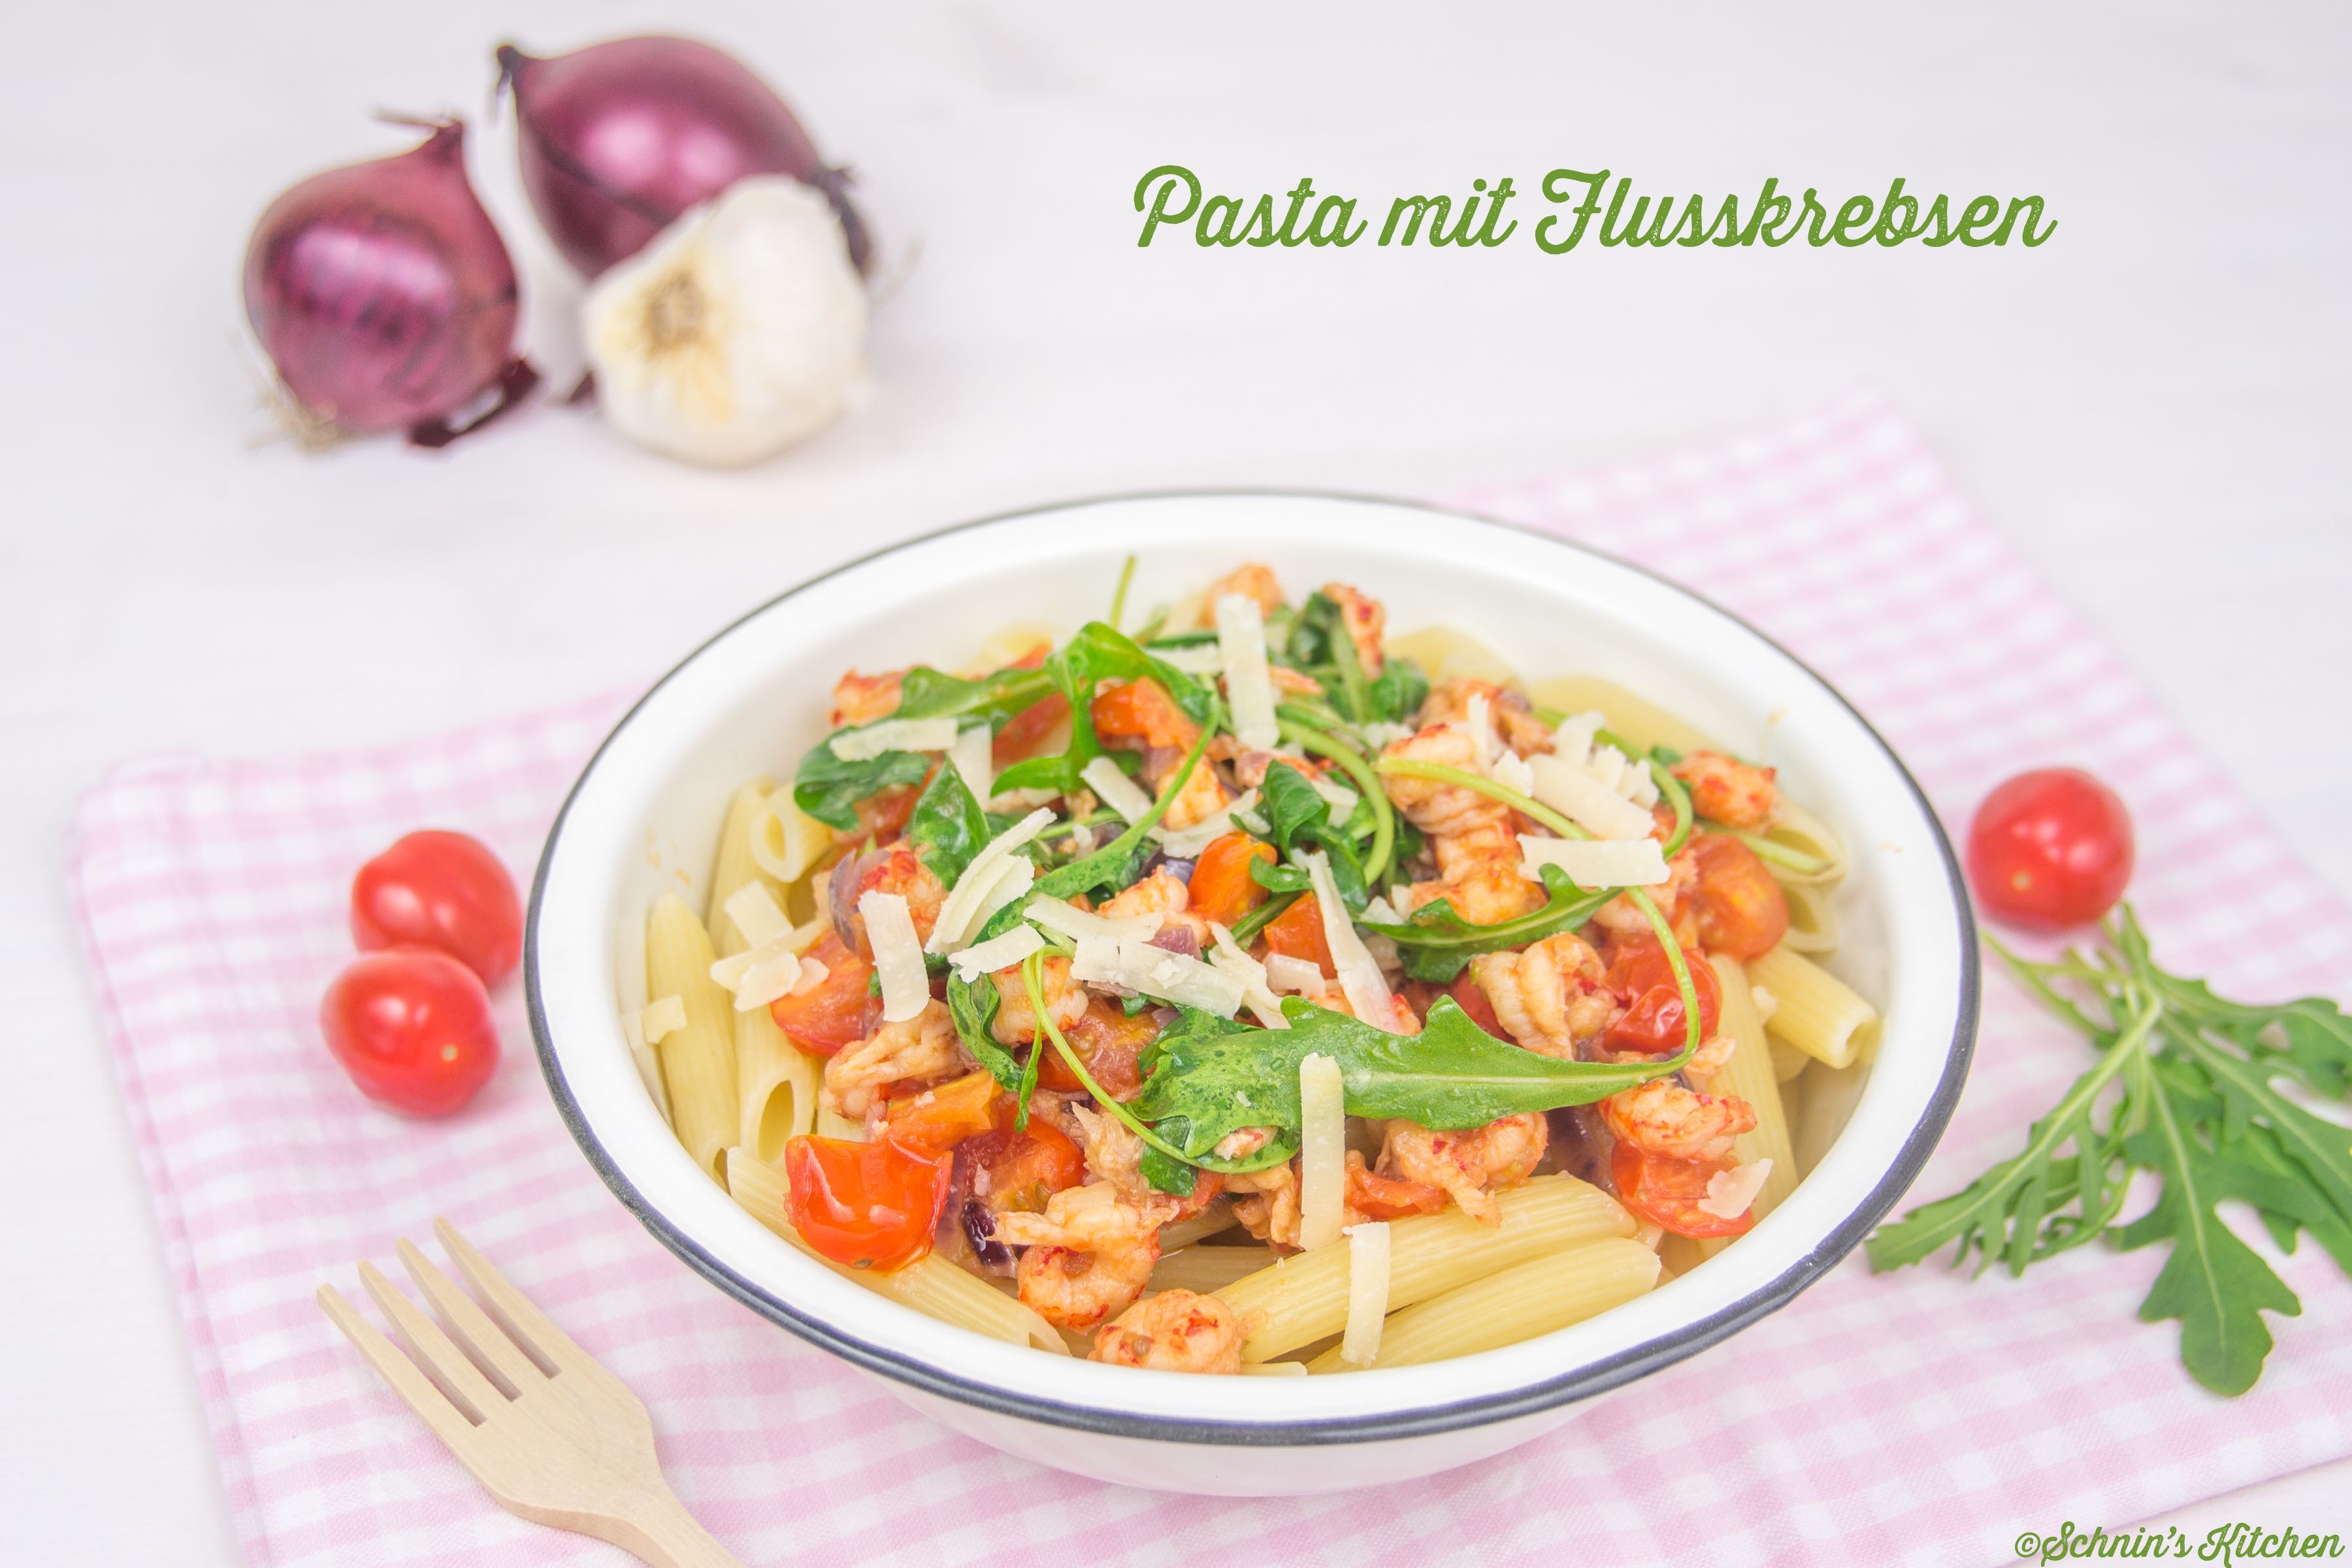 Die weltbeste Pasta mit Flusskrebsen, Tomaten, Rucola und Knoblauch - www.schninskitchen.de